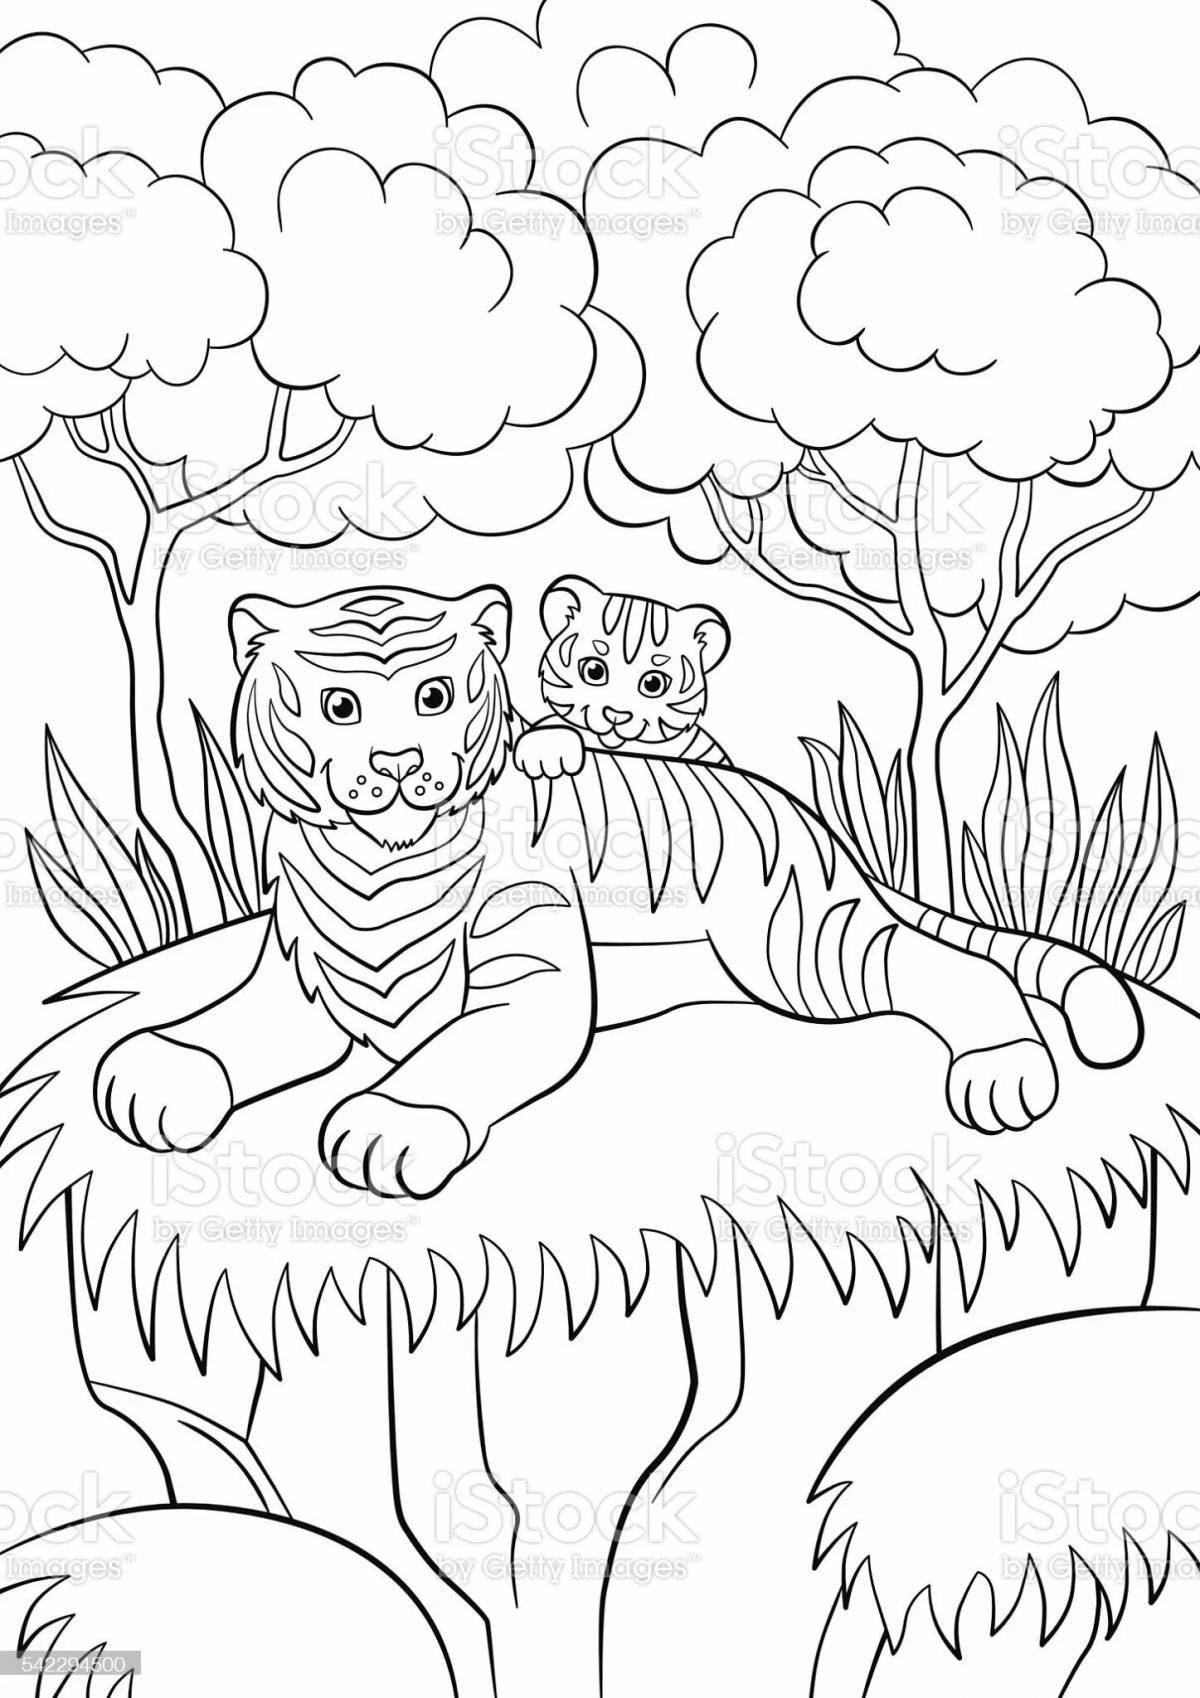 Динамичная страница раскраски семейства тигров